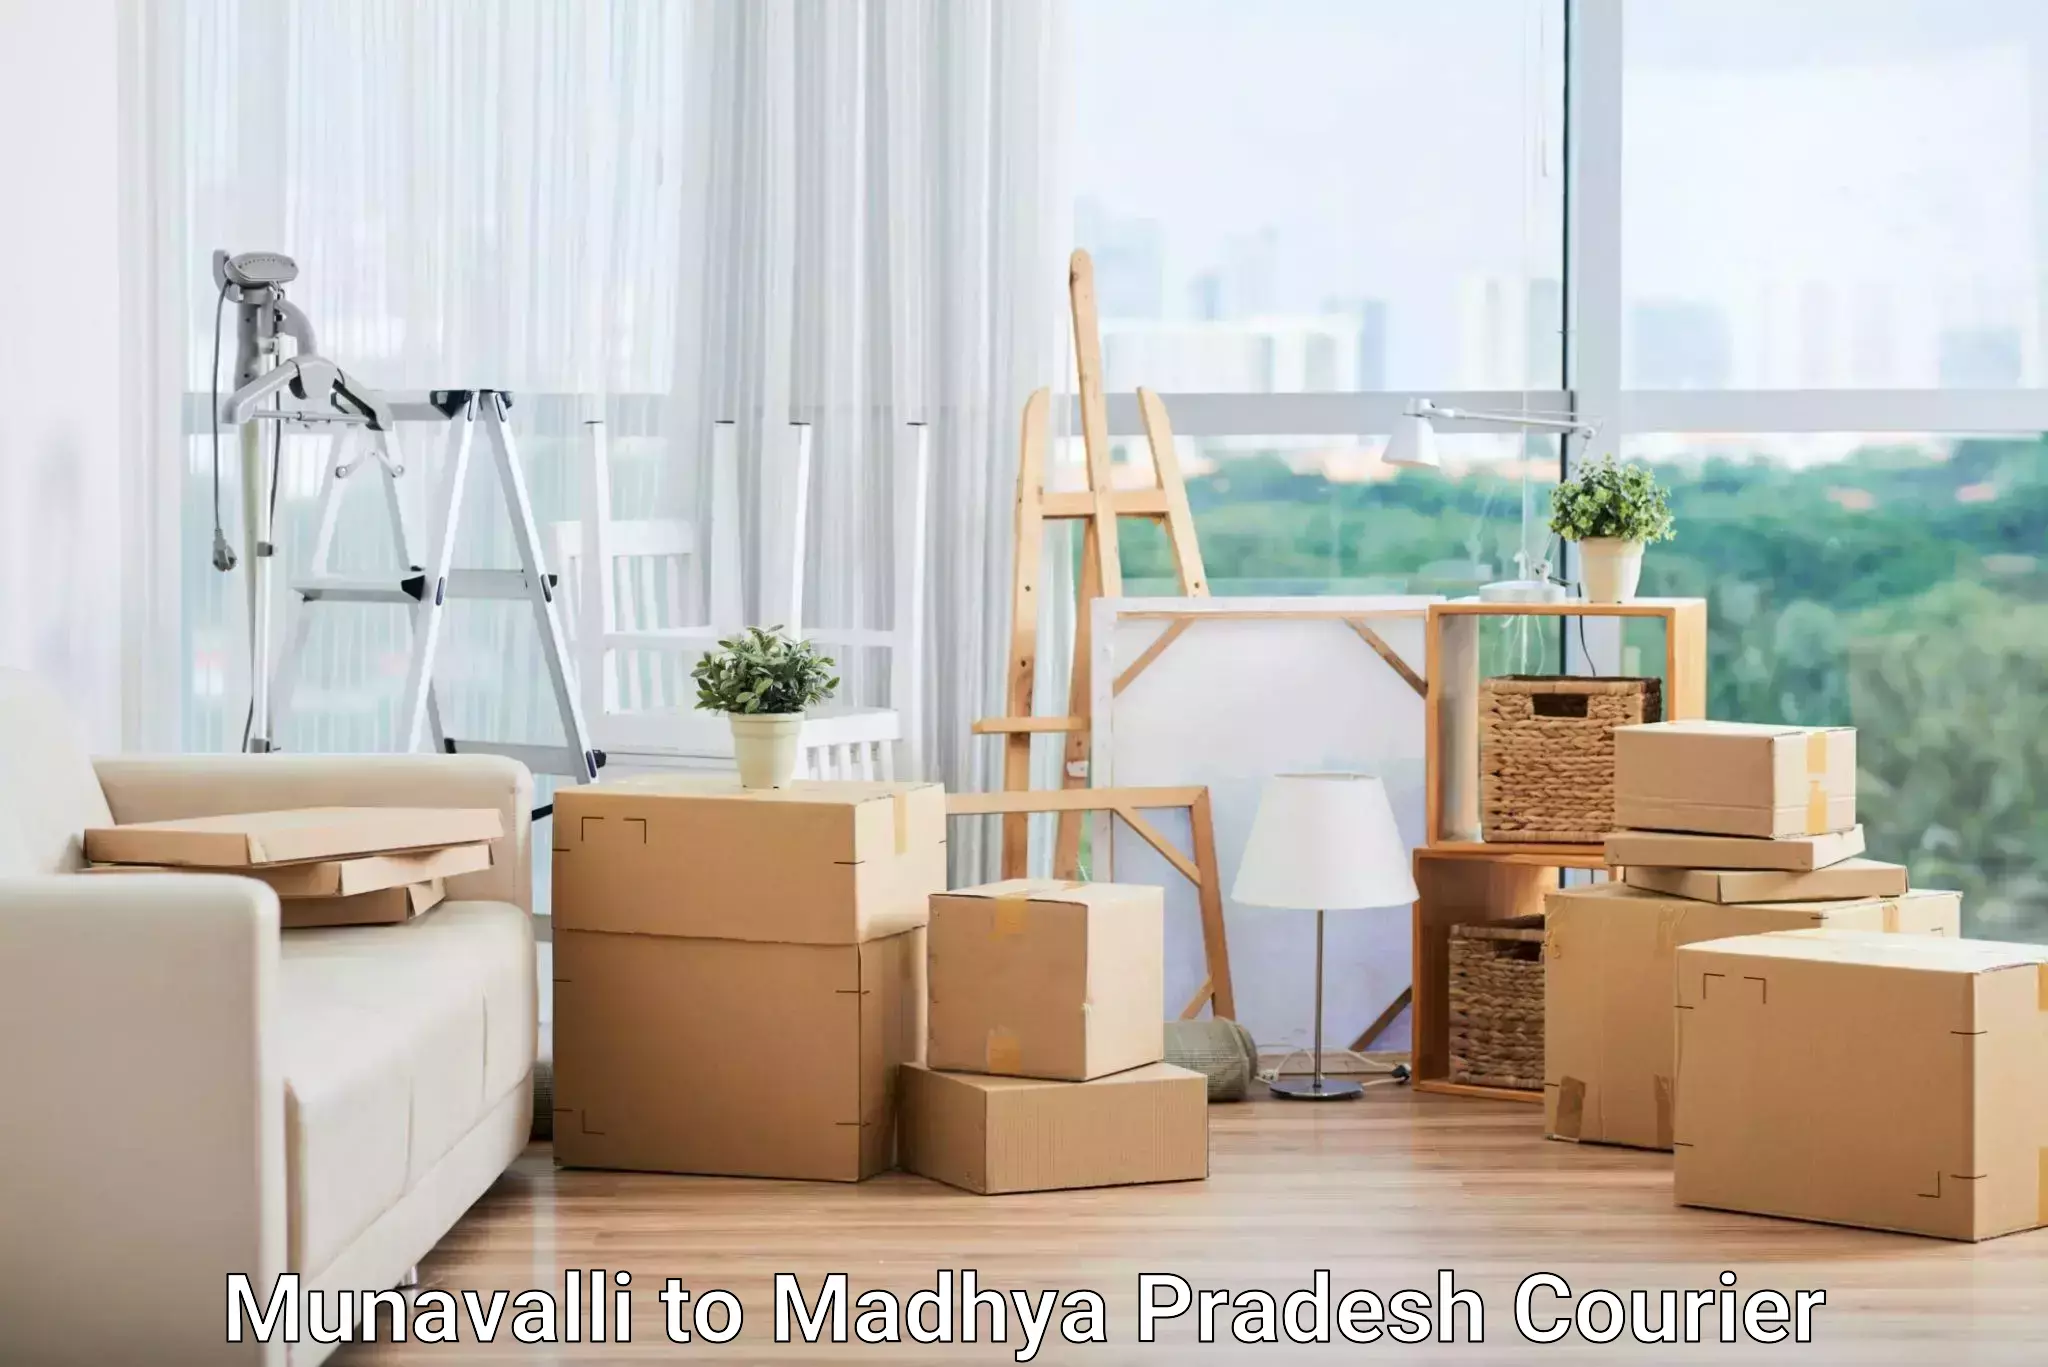 Logistics service provider Munavalli to Madhya Pradesh